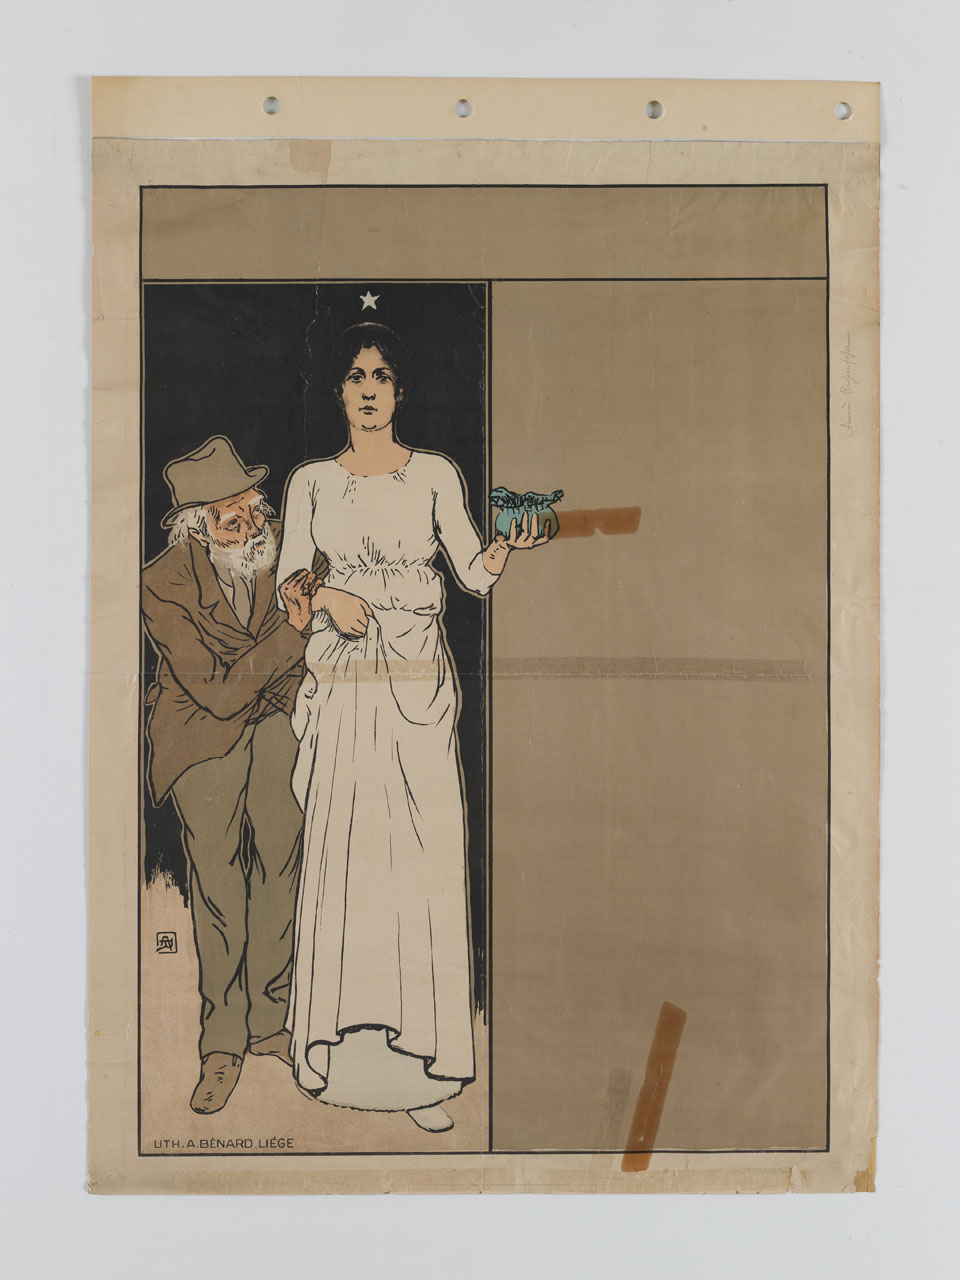 donna in abito bianco e stella sopra la testa tiene in mano un sacchetto e un vecchio si regge al suo braccio (manifesto) di Rassenfosse Armand (sec. XIX)